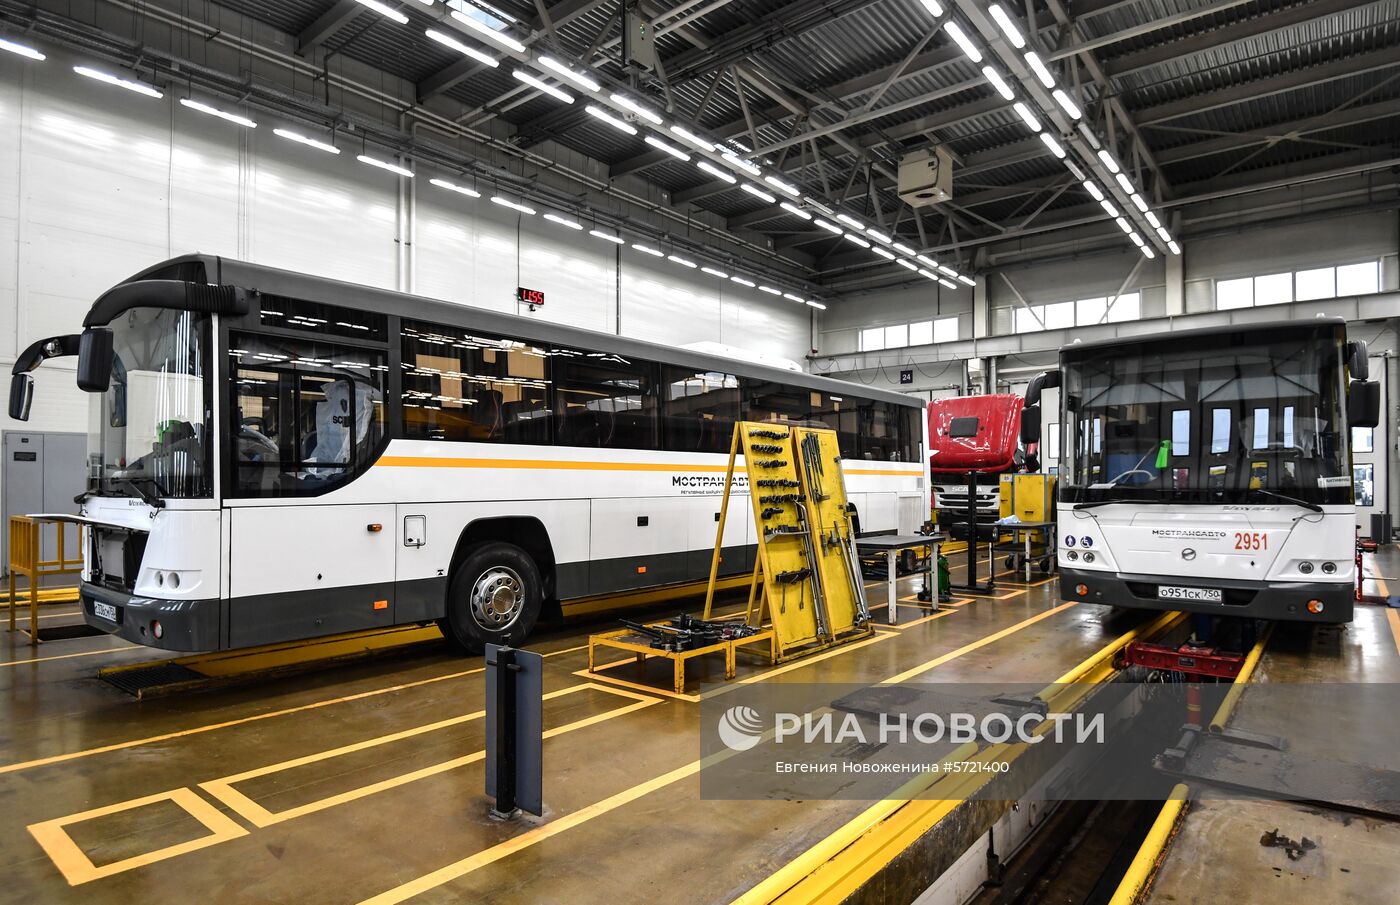 Обслуживание автобусов Мострансавто в сервисном центре "Скания"